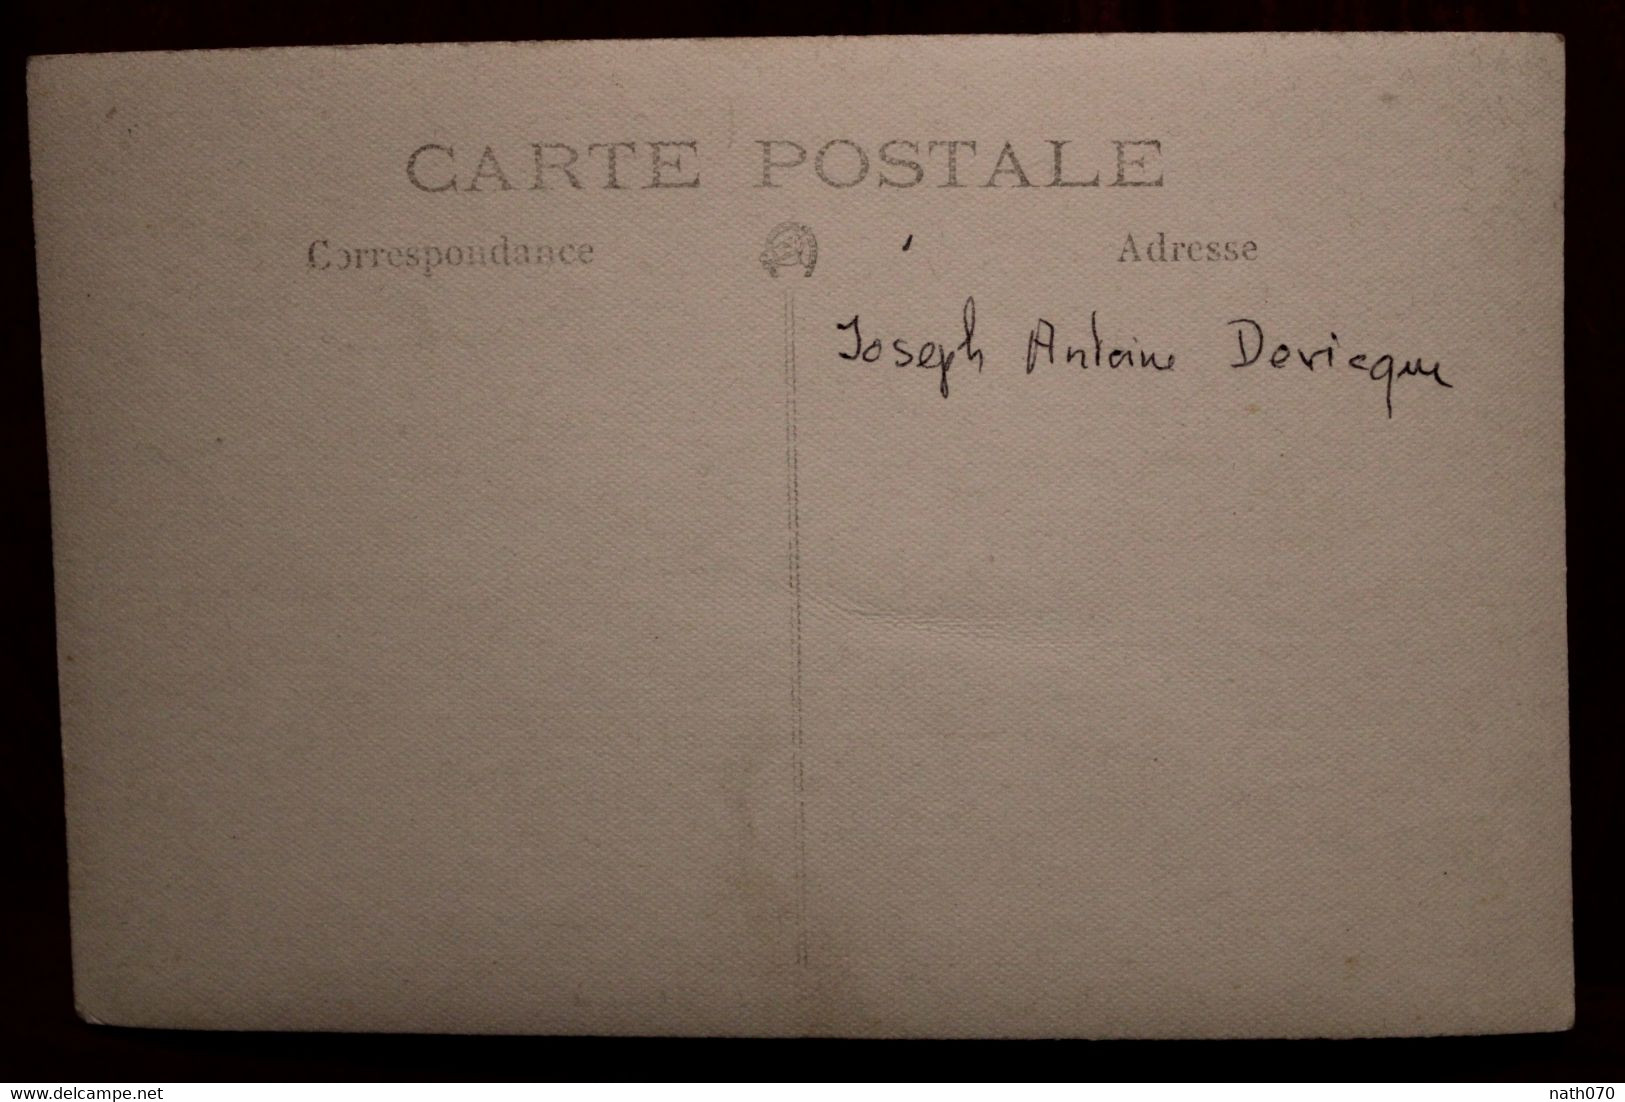 Carte Photo 1910's CPA Ak Joseph Antoine Devicque Animée - Généalogie